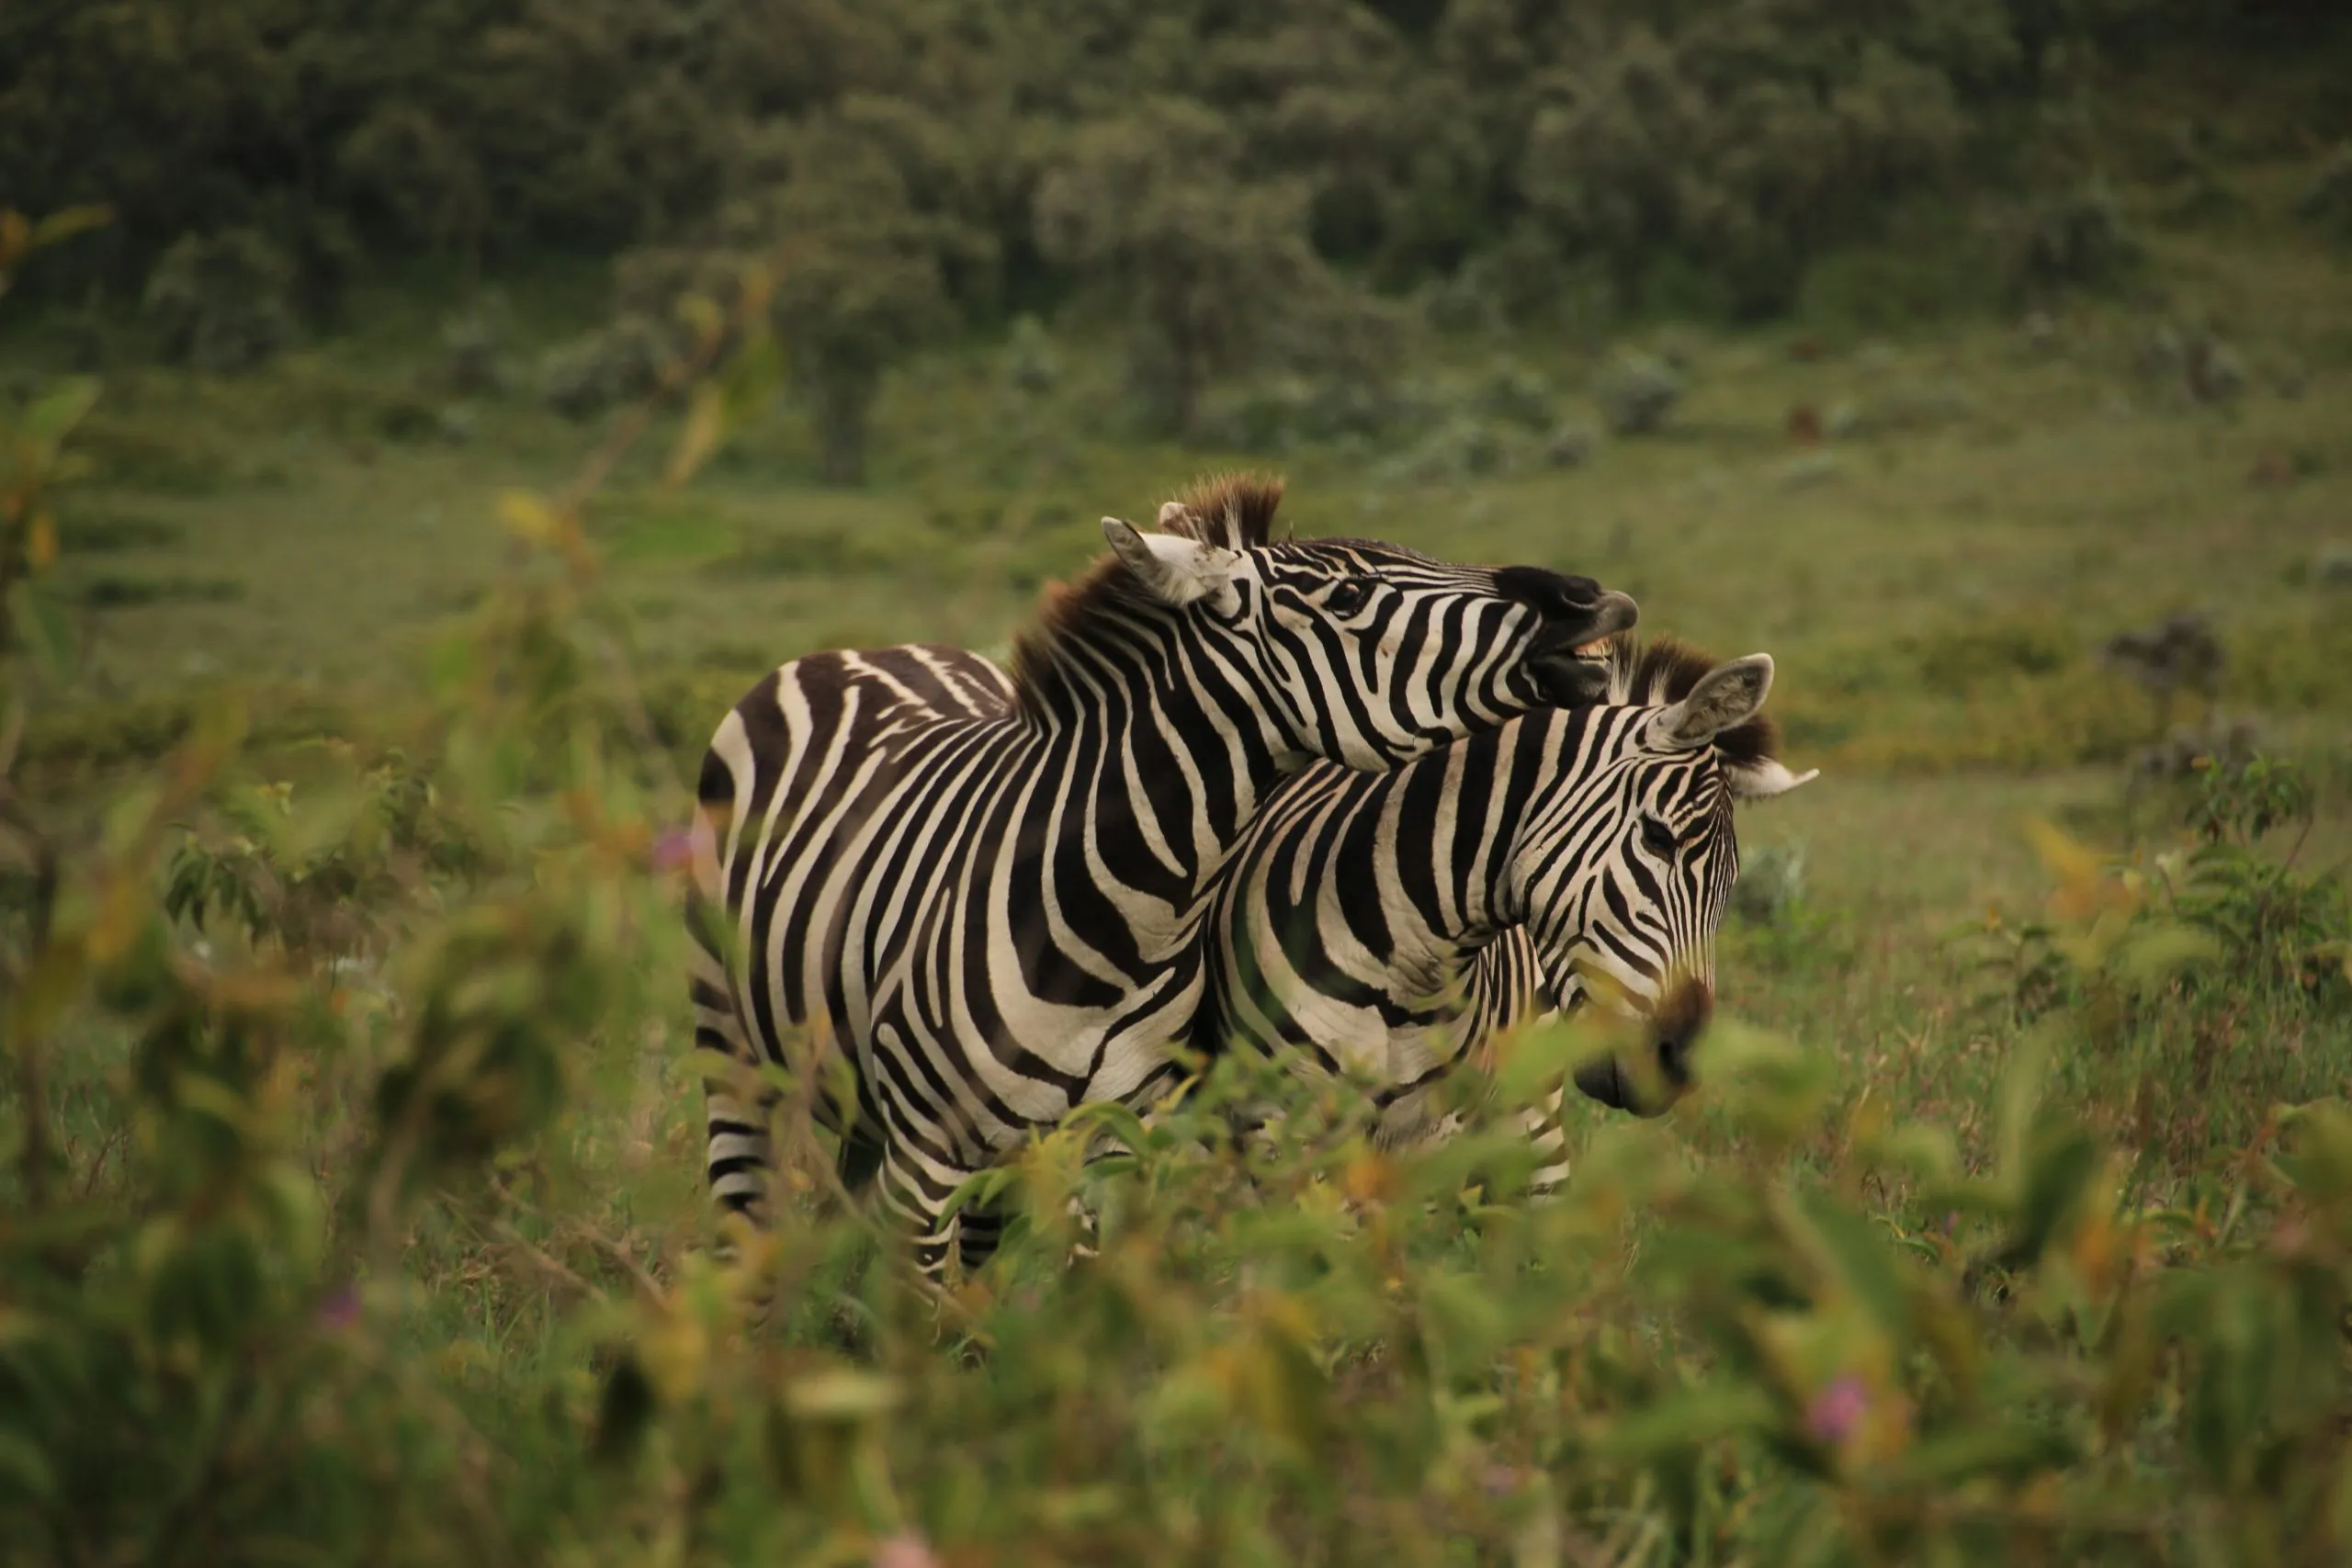 Zebras a brincar no Parque Nacional de Hell's Gate (Quénia) (01)